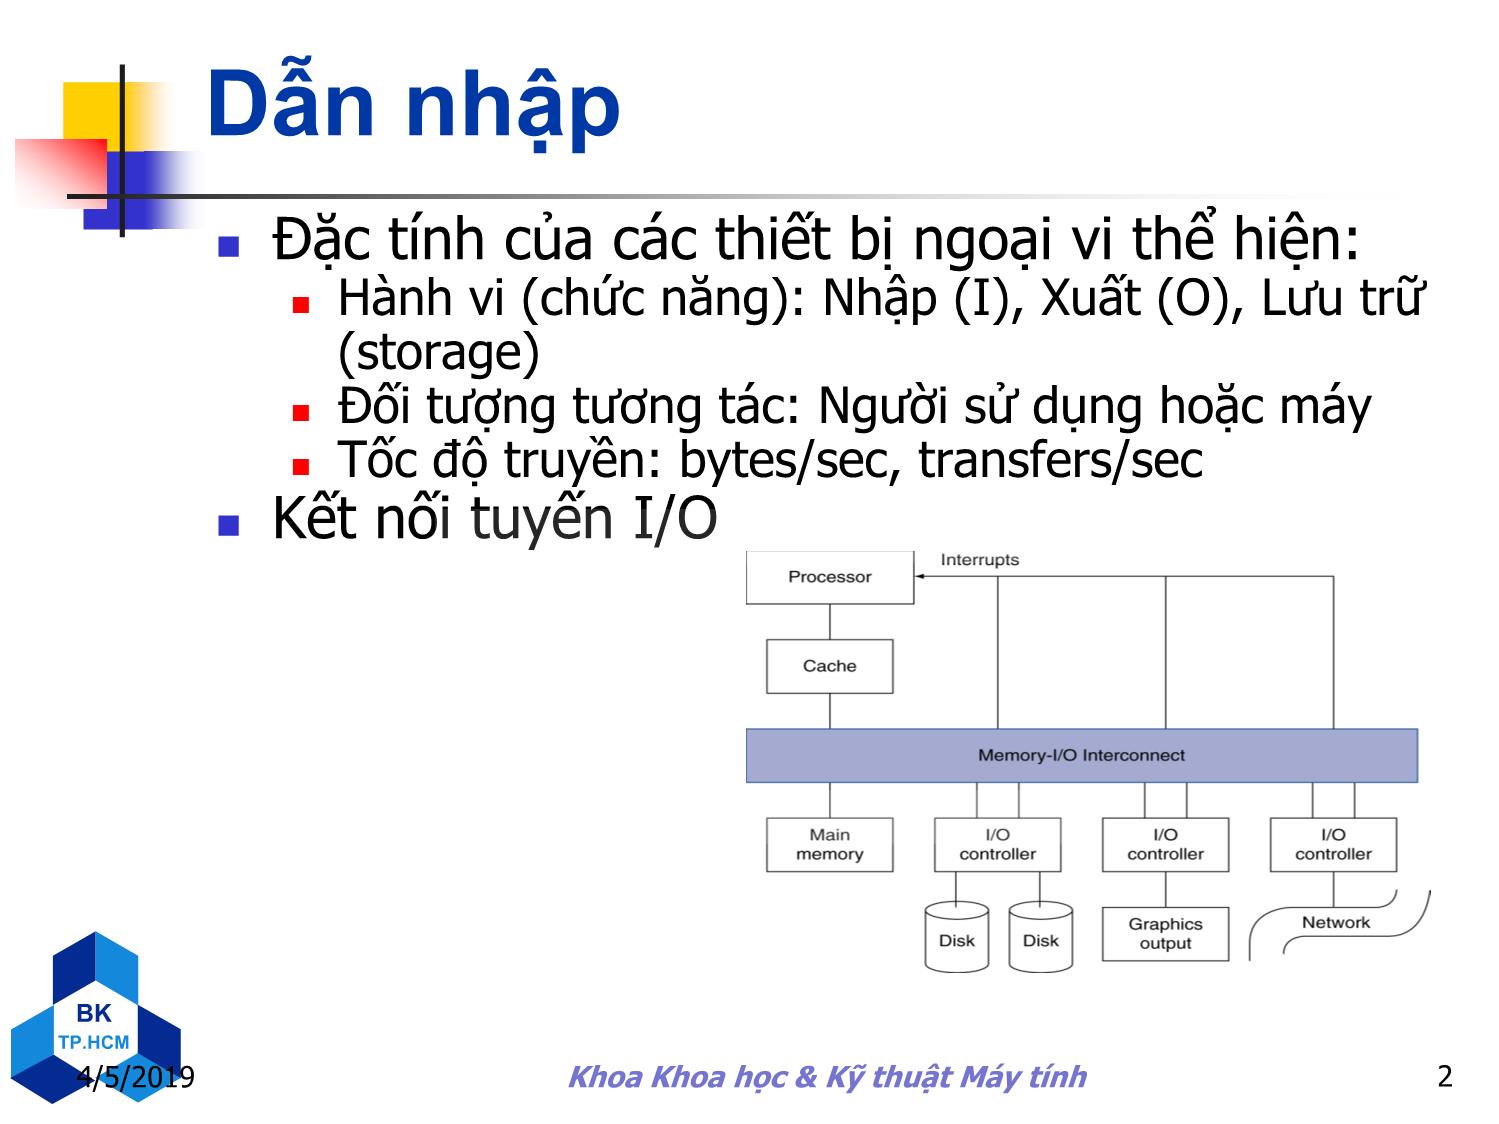 Bài giảng Kiến trúc máy tính - Chương 6: Hệ thống lưu trữ và các thiết bị xuất/nhập khác trang 2